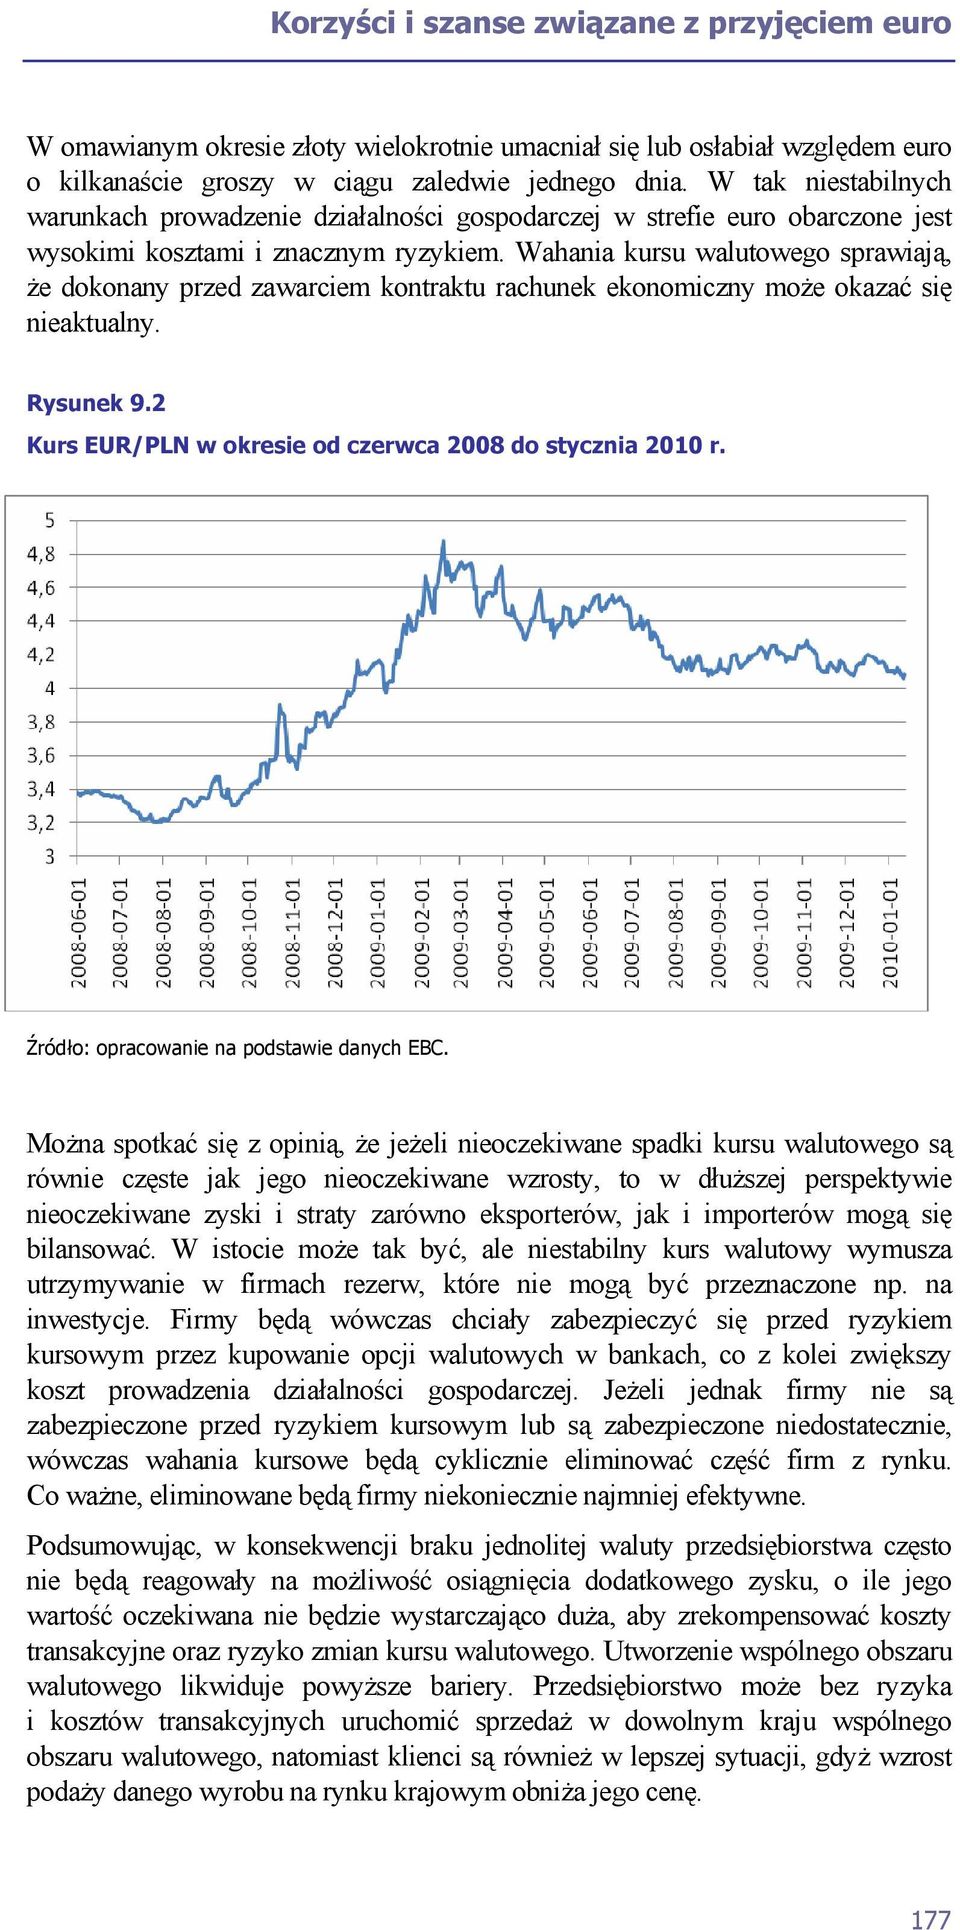 Wahania kursu walutowego sprawiają, że dokonany przed zawarciem kontraktu rachunek ekonomiczny może okazać się nieaktualny. Rysunek 9.2 Kurs EUR/PLN w okresie od czerwca 2008 do stycznia 2010 r.